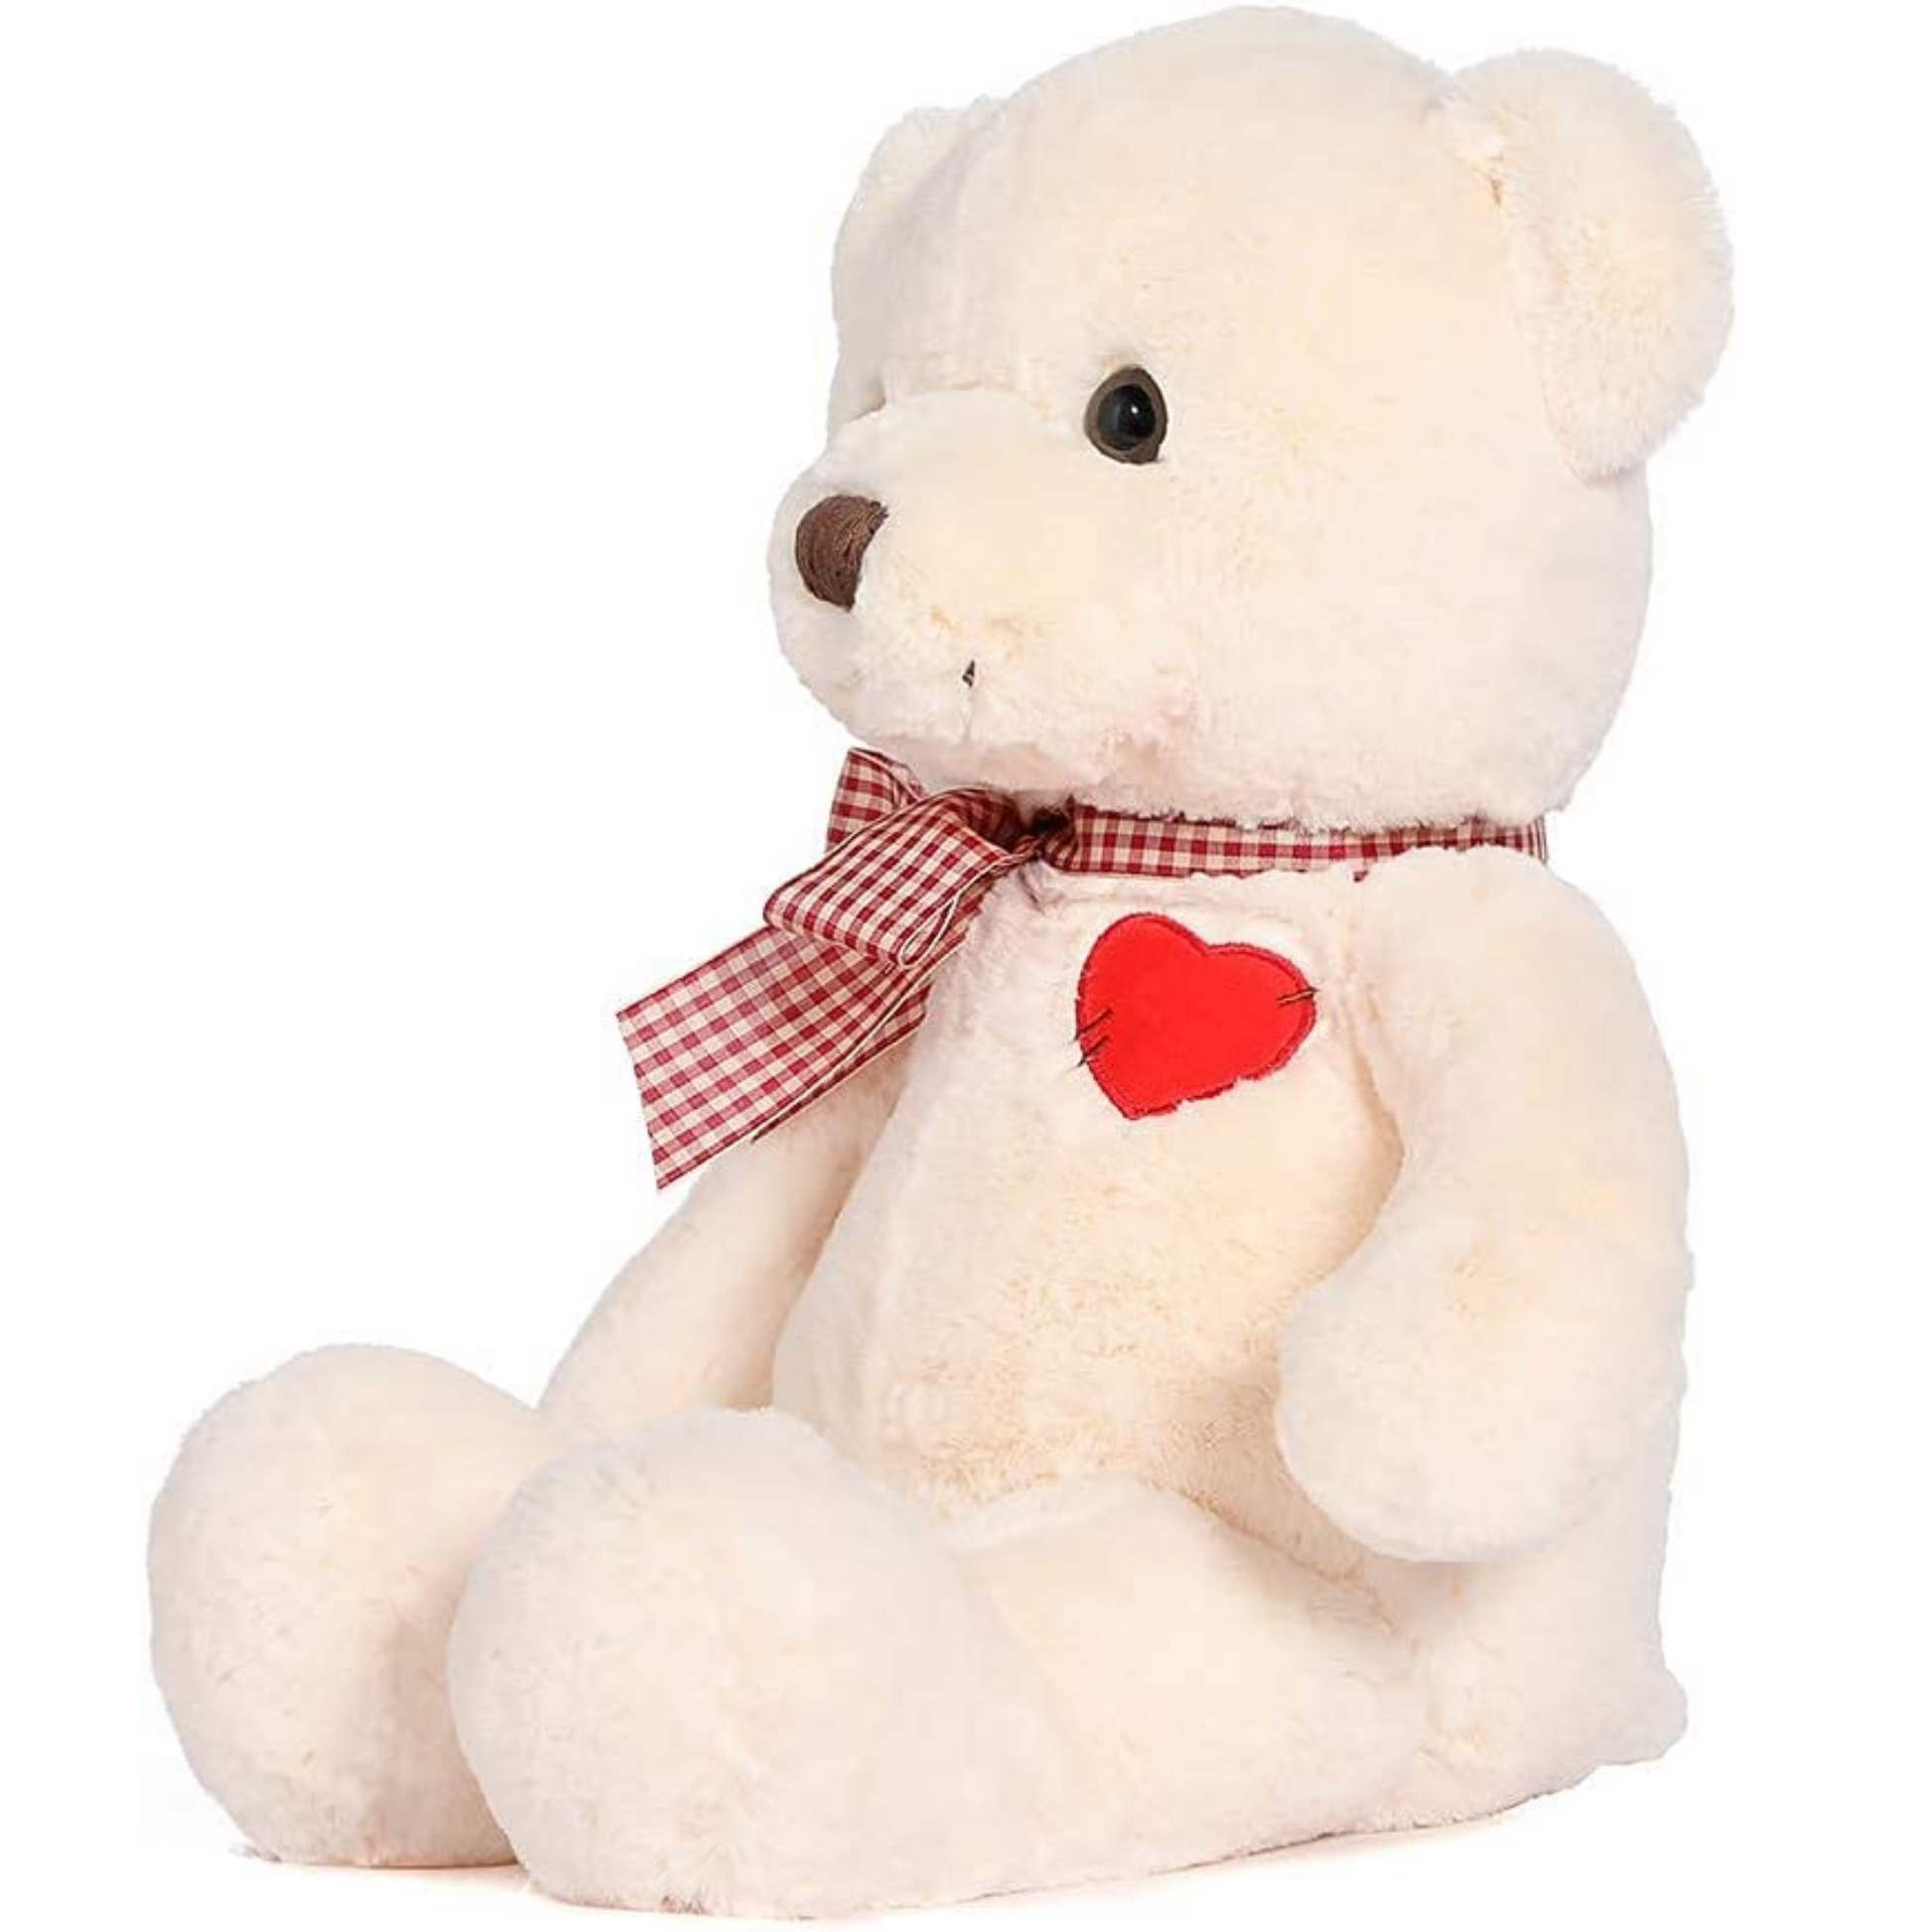 Teddy Bear Stuffed Animal Toy, Beige, 20 Inches